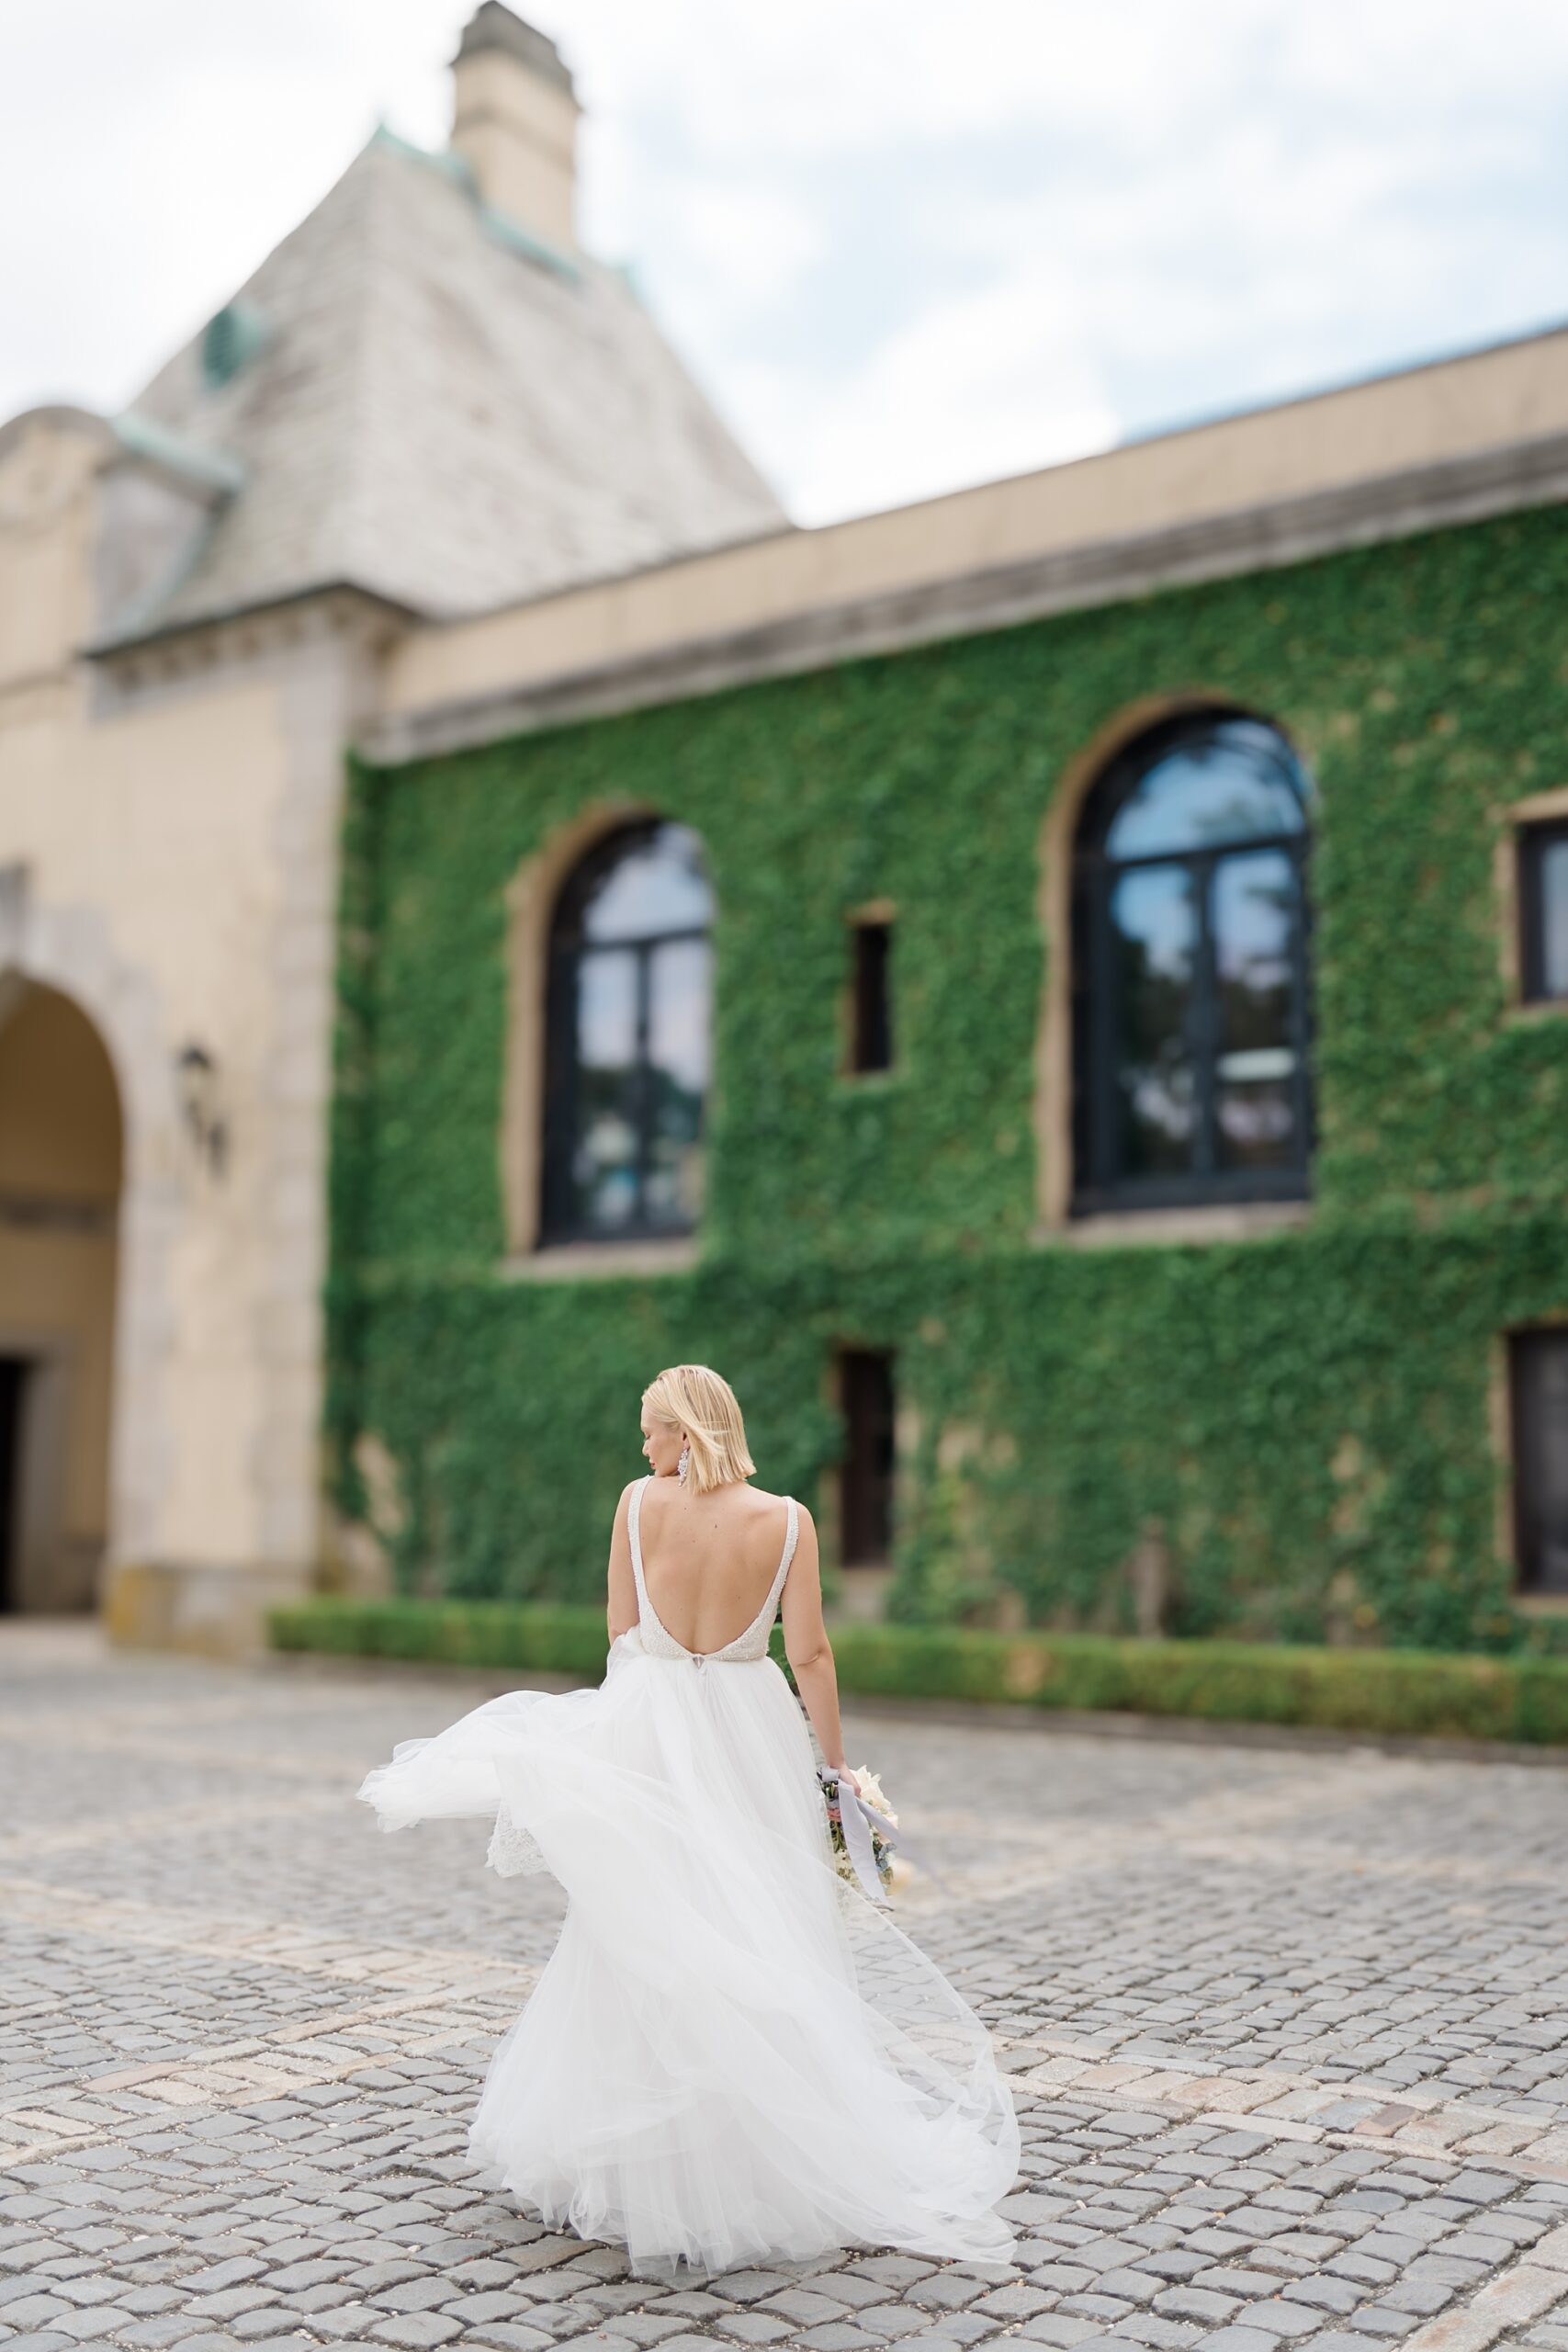 back of bride's wedding dress walking toward castle